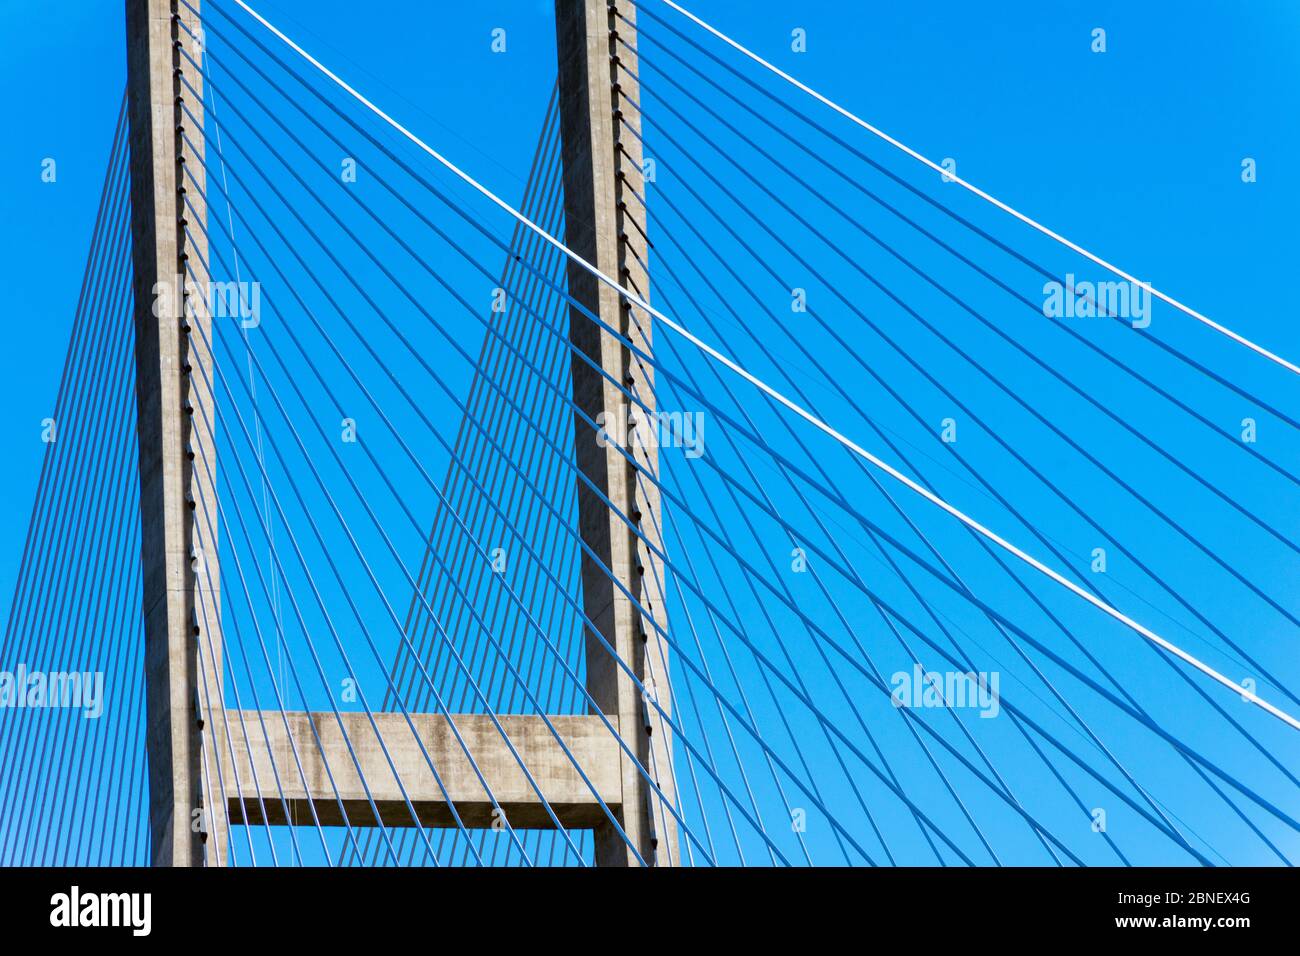 Eine Nahaufnahme der Hängebrücke in Brunswick, Georgia, erzeugt eine interessante abstrakte Komposition. Stockfoto